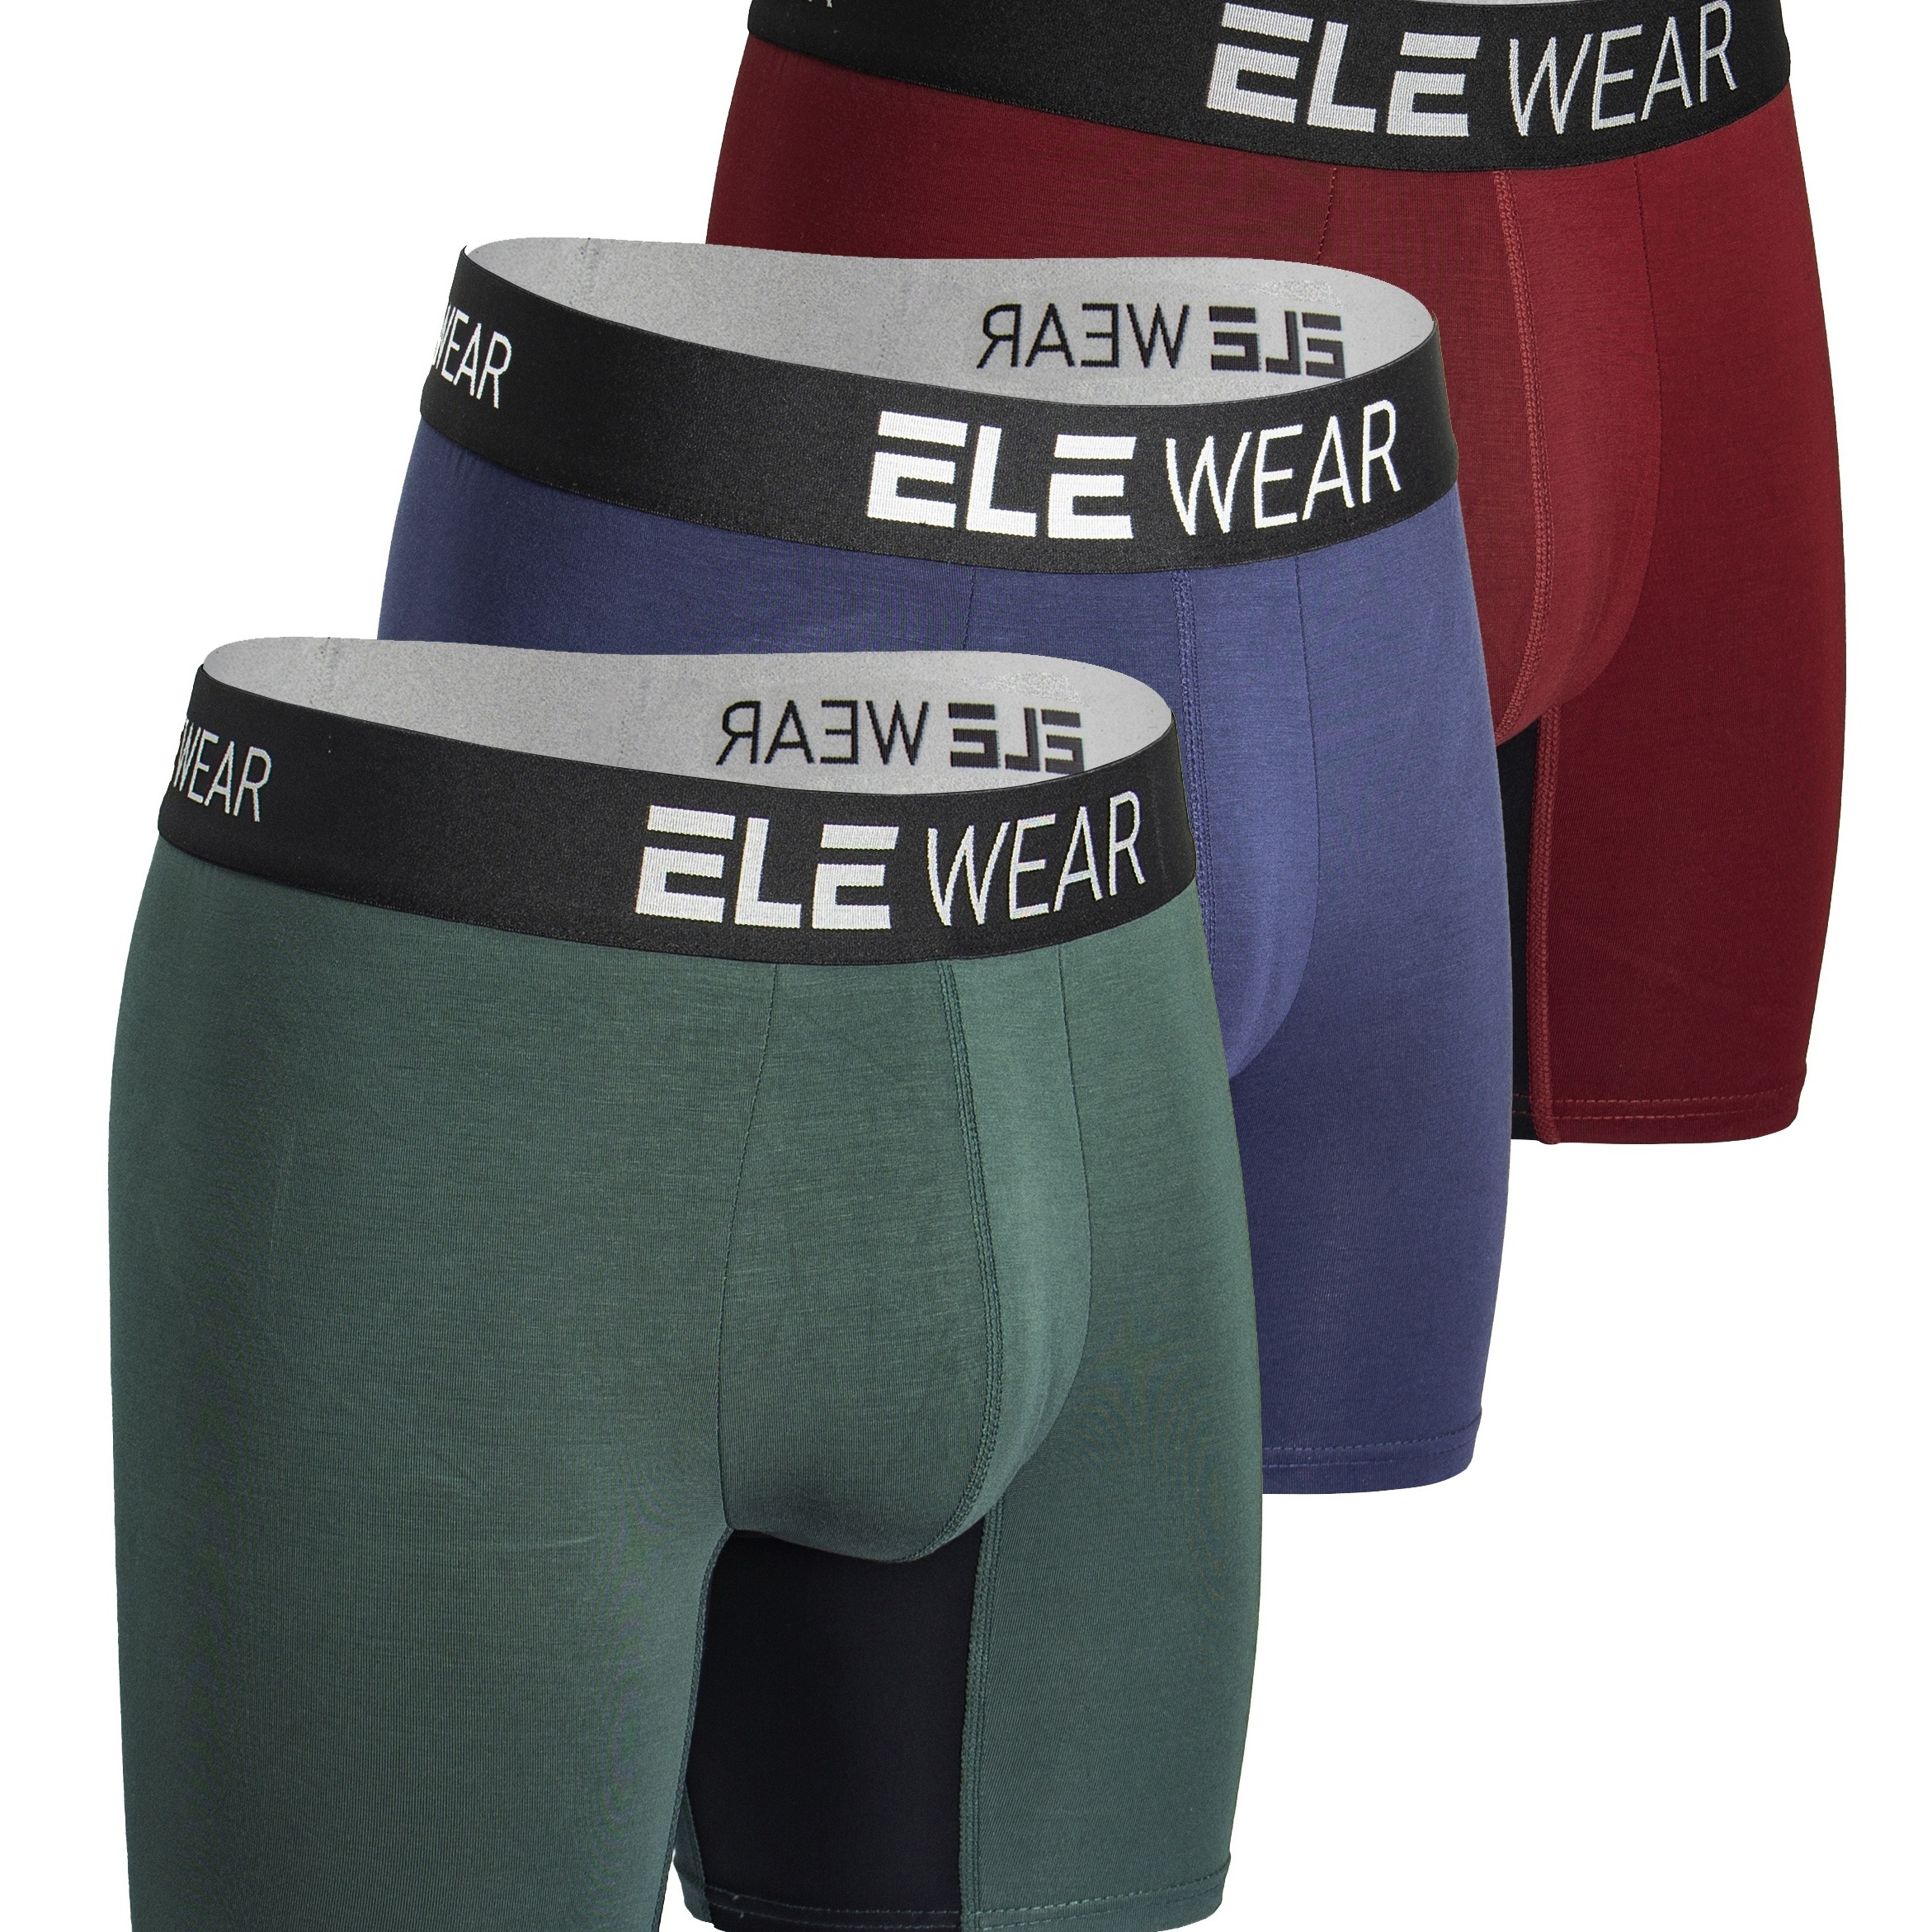 

3pcs Men's Bamboo Fibre Breathable Soft Comfy Moisture Wicking Long Boxer Briefs Shorts, Men's Underwear